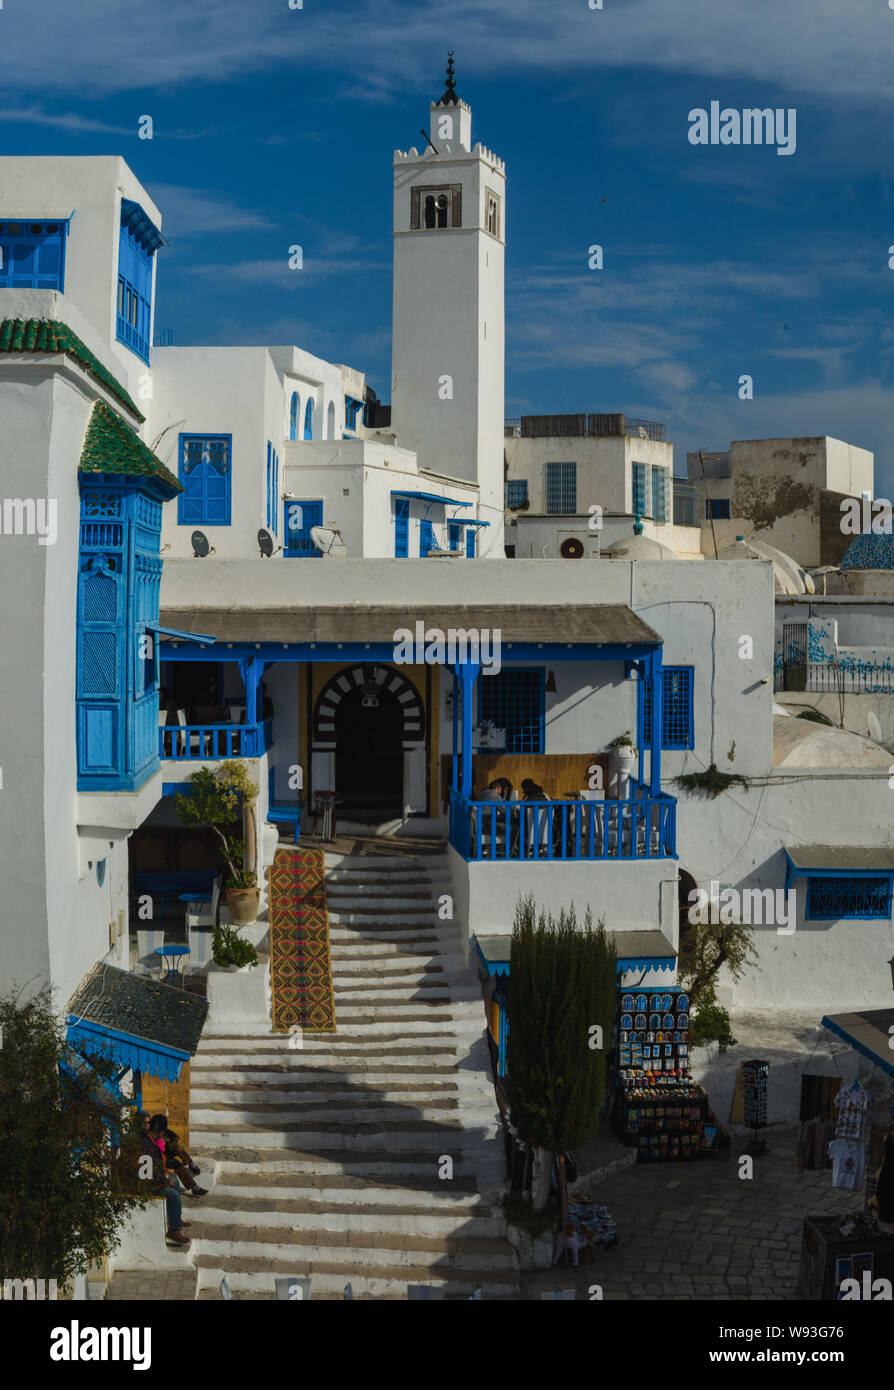 Belle vue de Sidi Bou Said, blanc et bleu village touristique en Tunisie. Banque D'Images